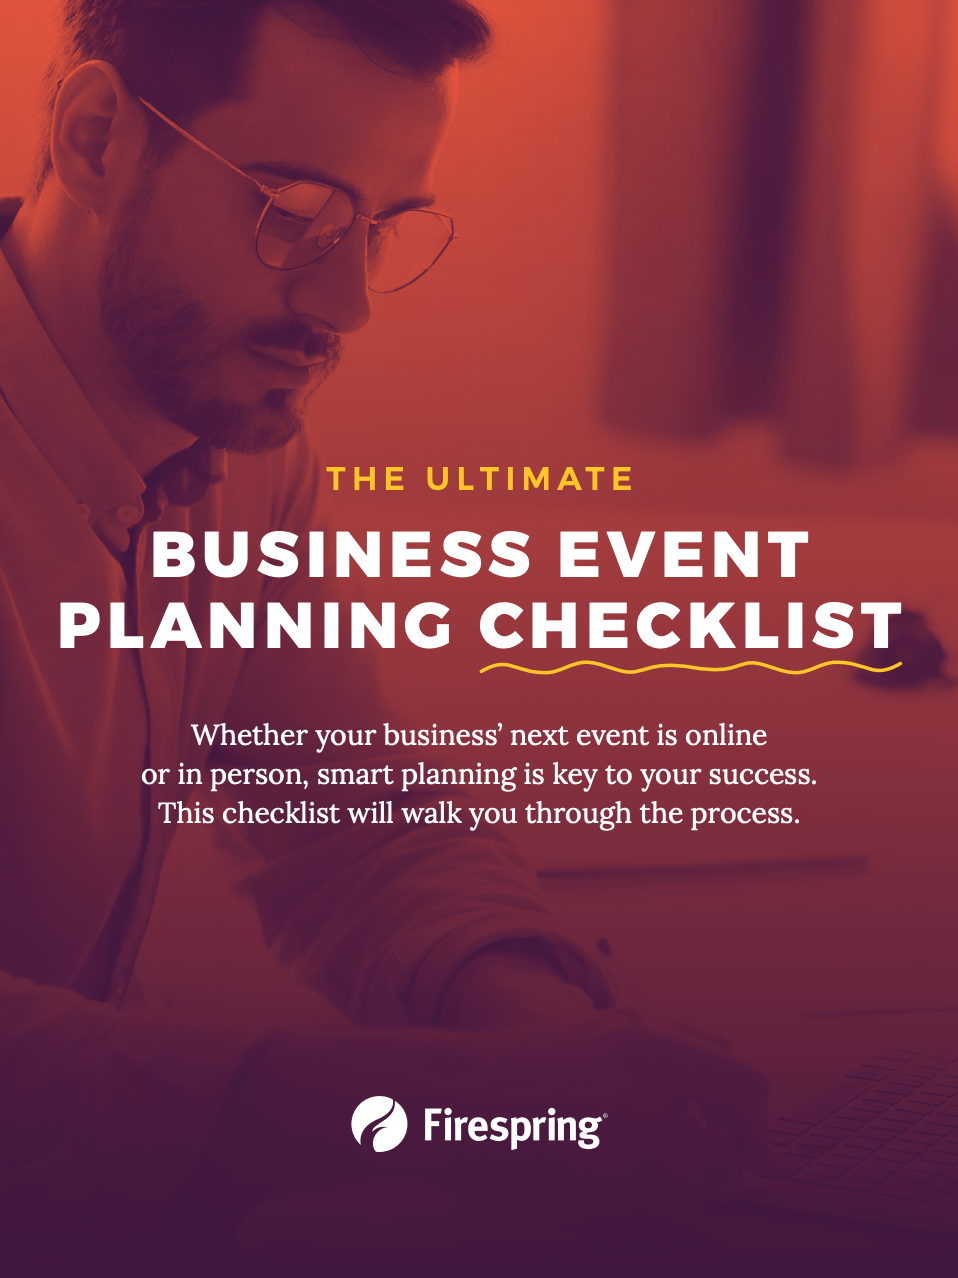 Business event planning checklist